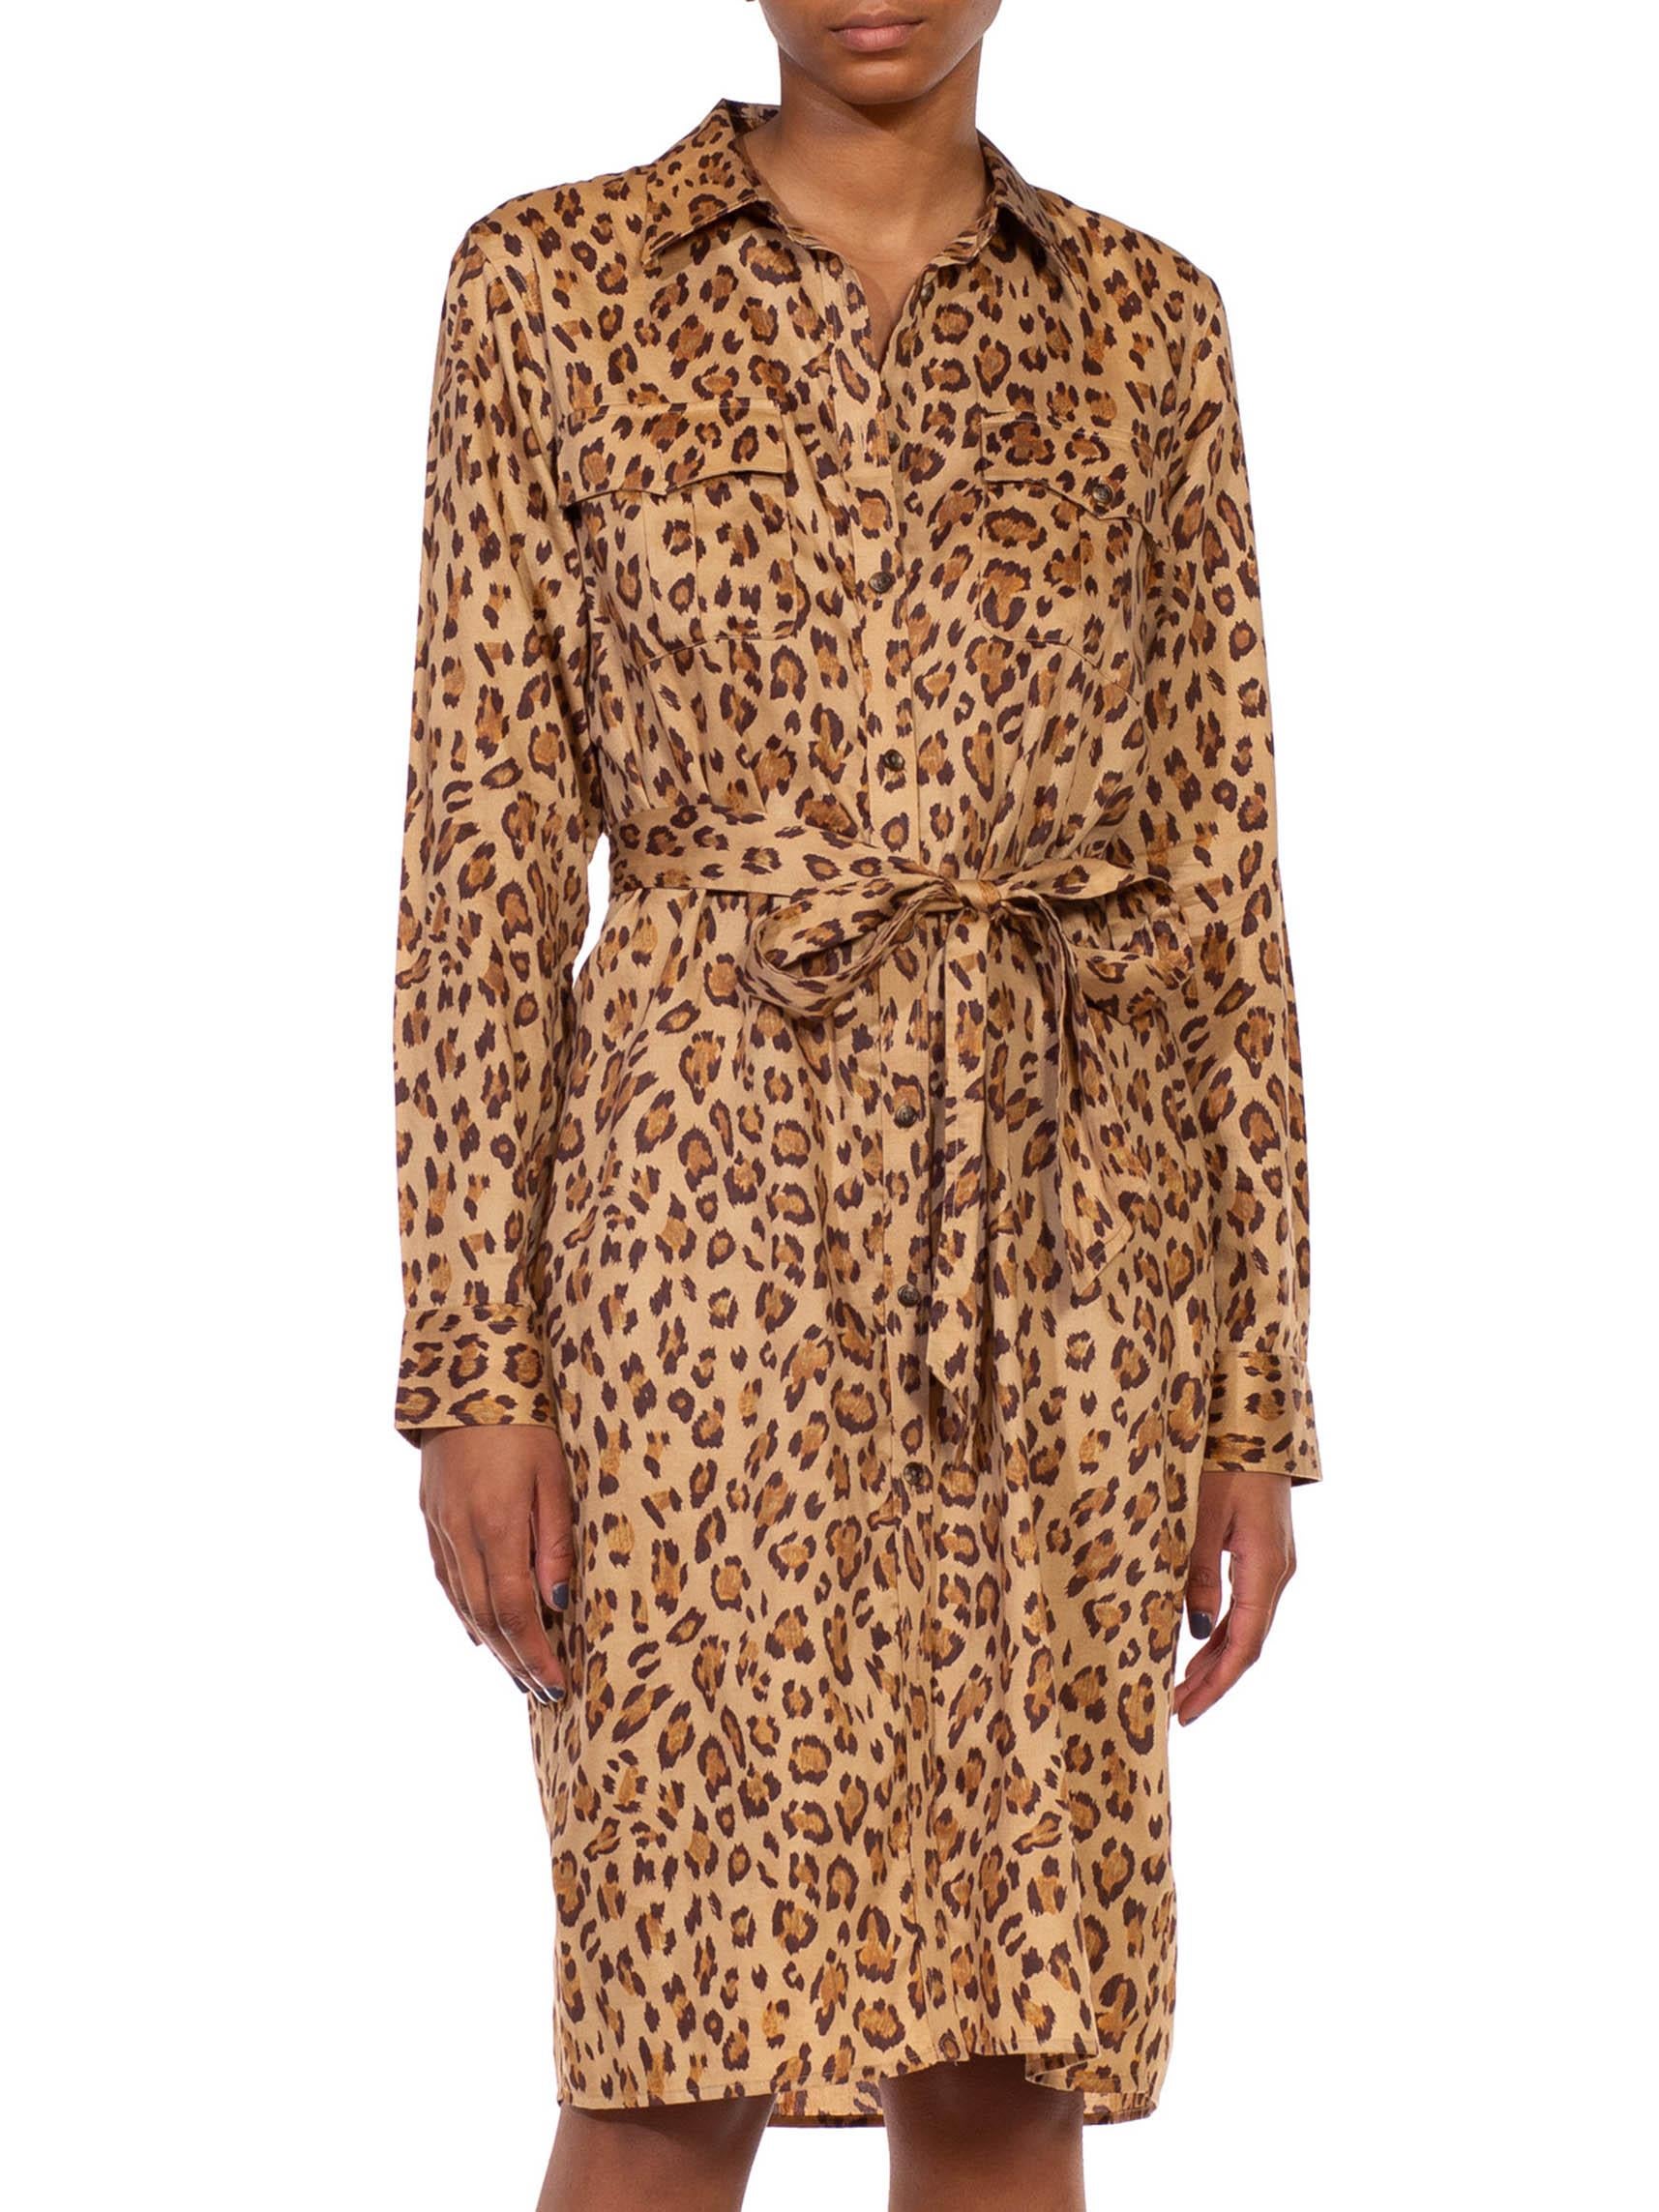 Women's 2000S RALPH LAUREN Leopard Print Brown Cotton Sateen Safari Shirt Dress